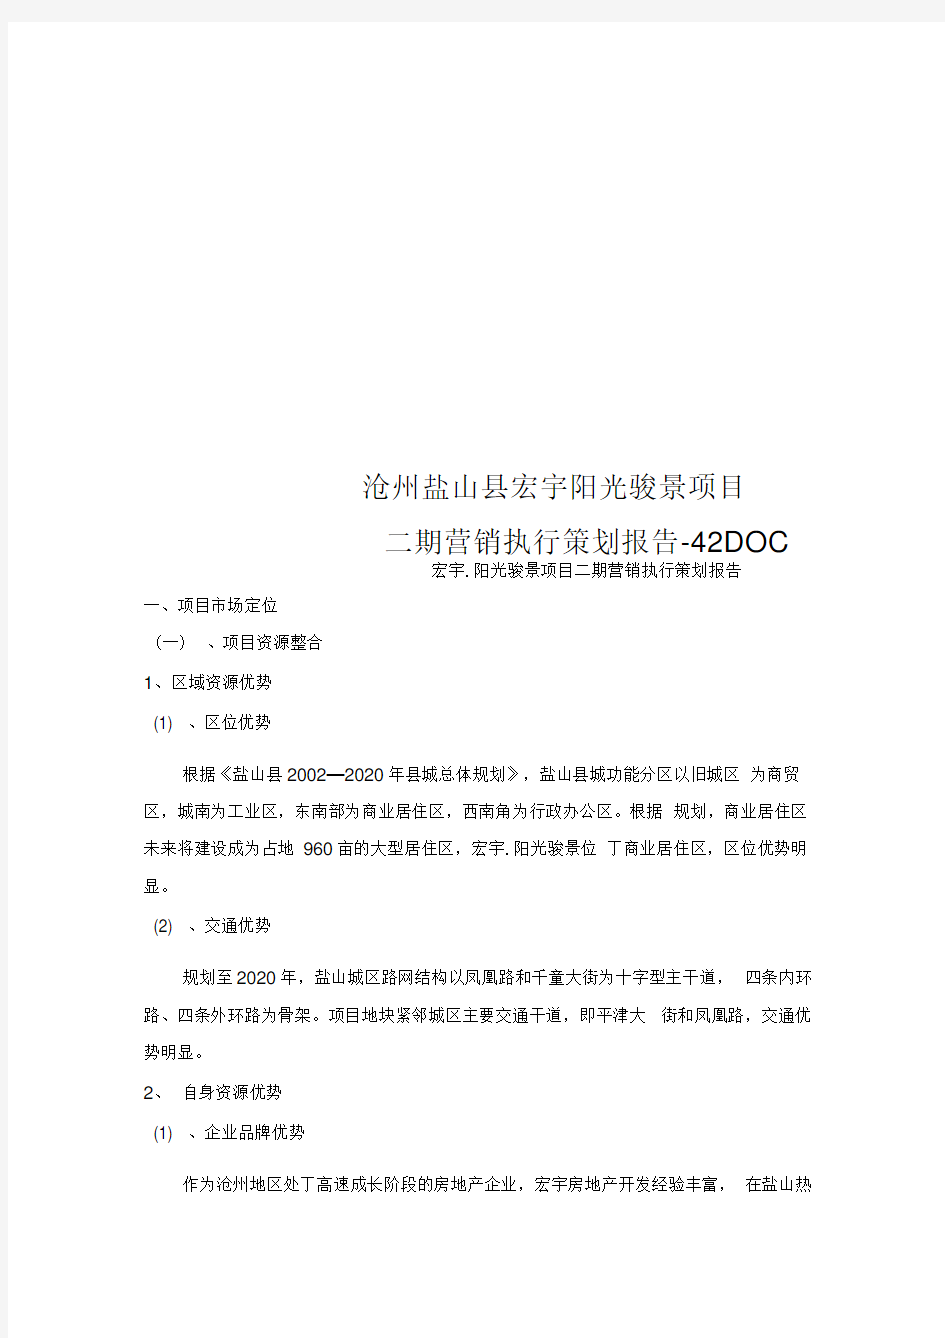 沧州盐山县宏宇阳光骏景项目二期营销执行策划报告-42DOC